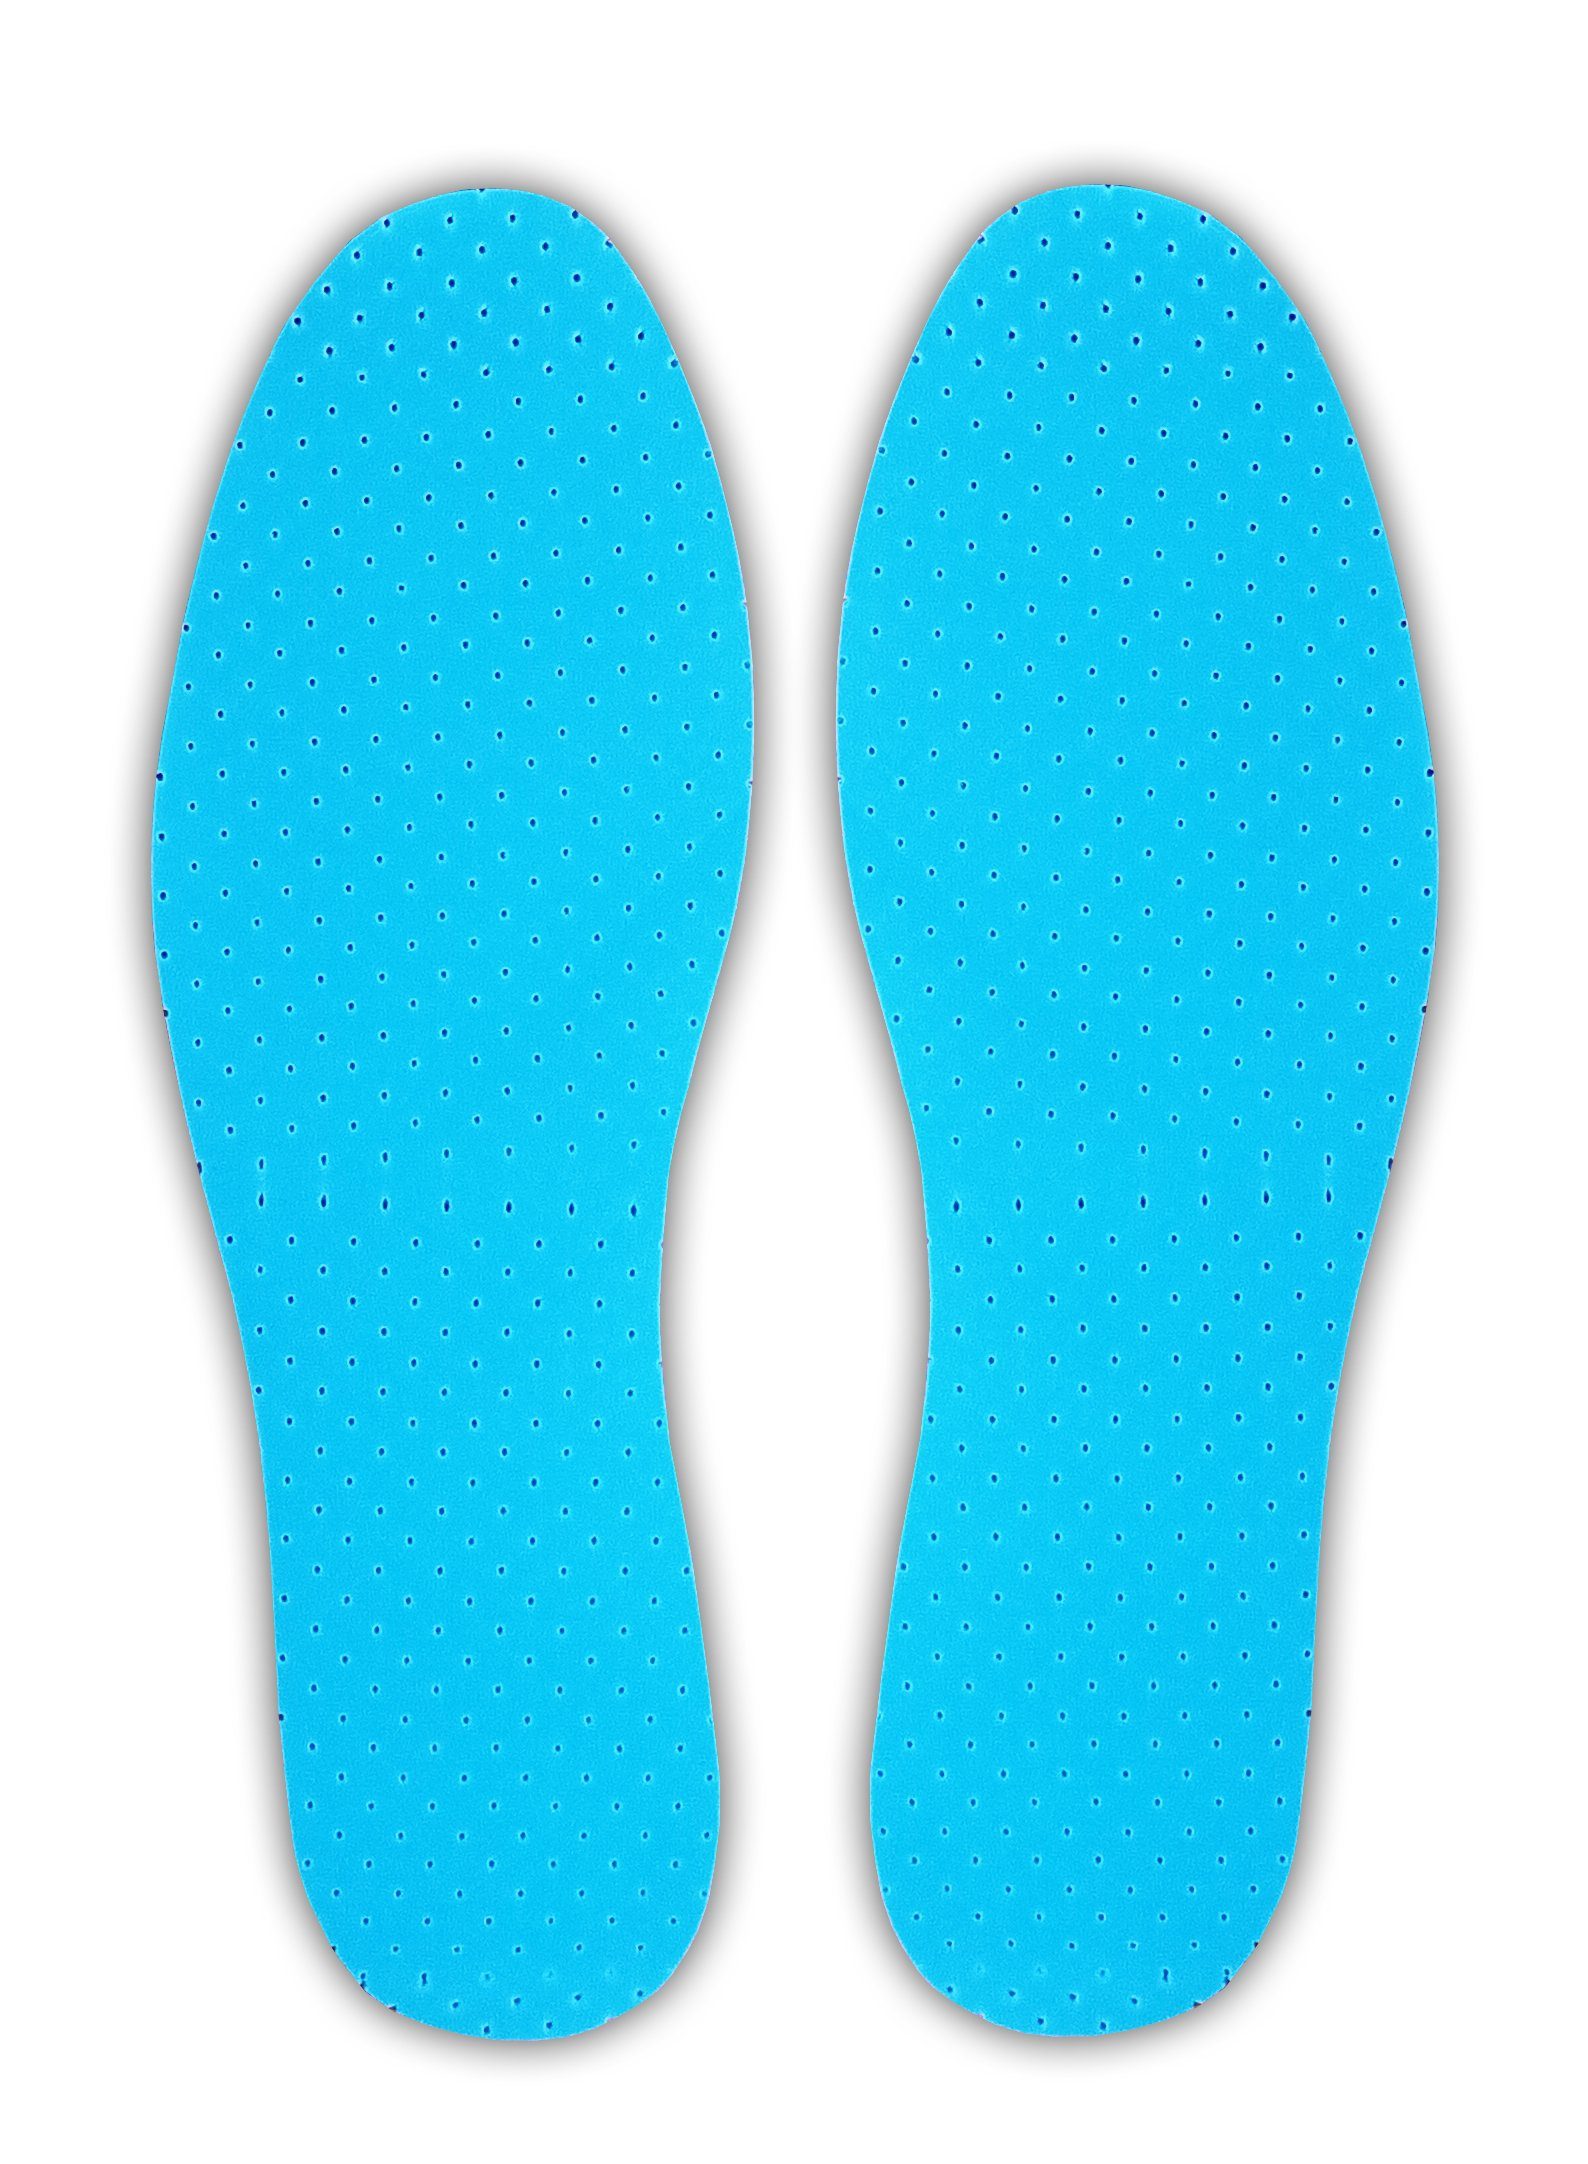 Reinex Einlegesohlen 1 Paar EINLEGESOHLE GERUCH-STOPP Gr. 36-46 zuschneidbar Schuheinlagen Sohlen Sohle 32